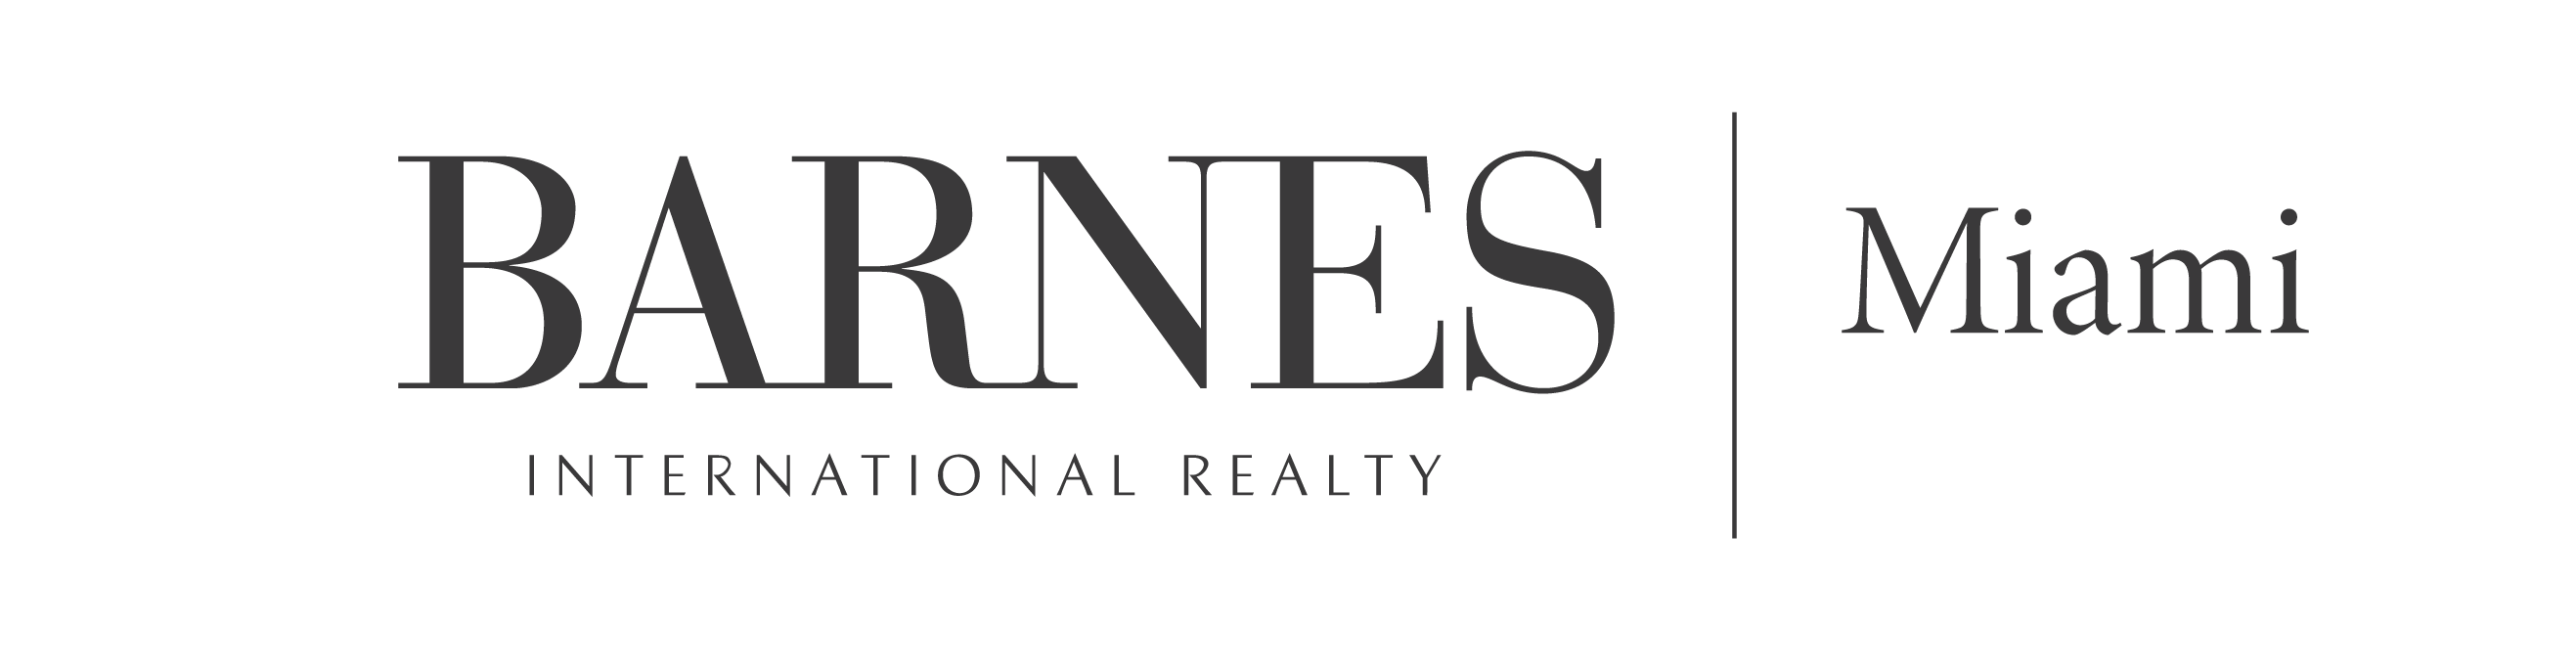 Barnes Miami logo